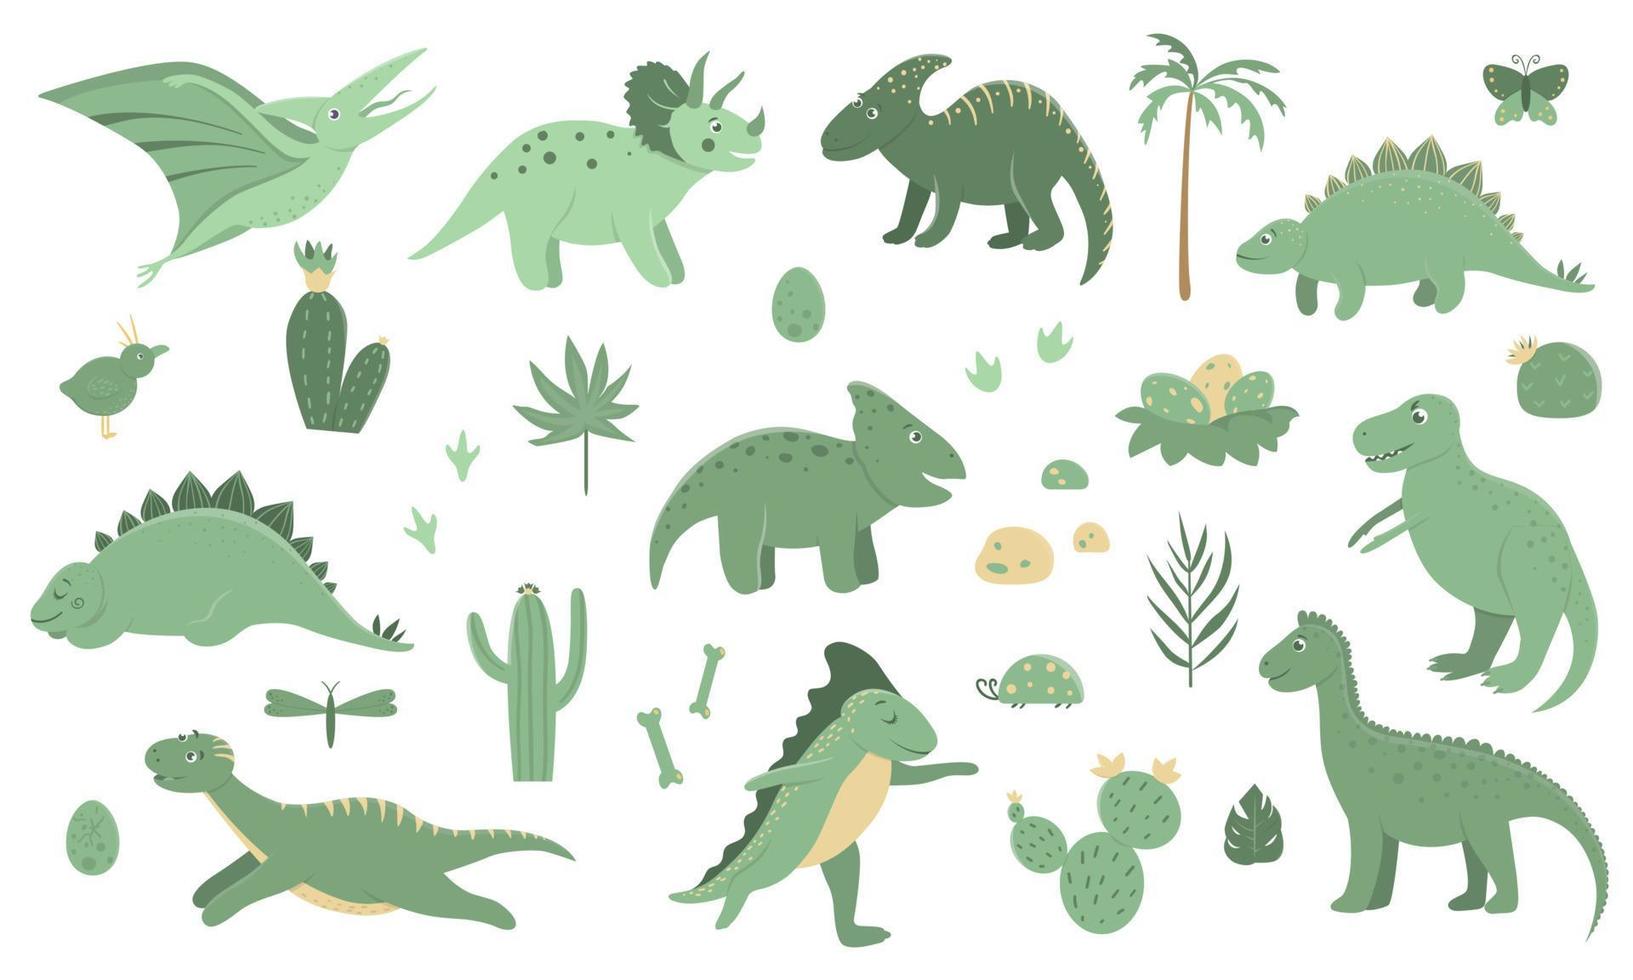 ensemble d'images vectorielles de mignons dinosaures verts avec palmiers, cactus, pierres, empreintes de pas, os pour enfants. fond de personnage de dessin animé plat dino. illustration mignonne de reptile préhistorique. vecteur